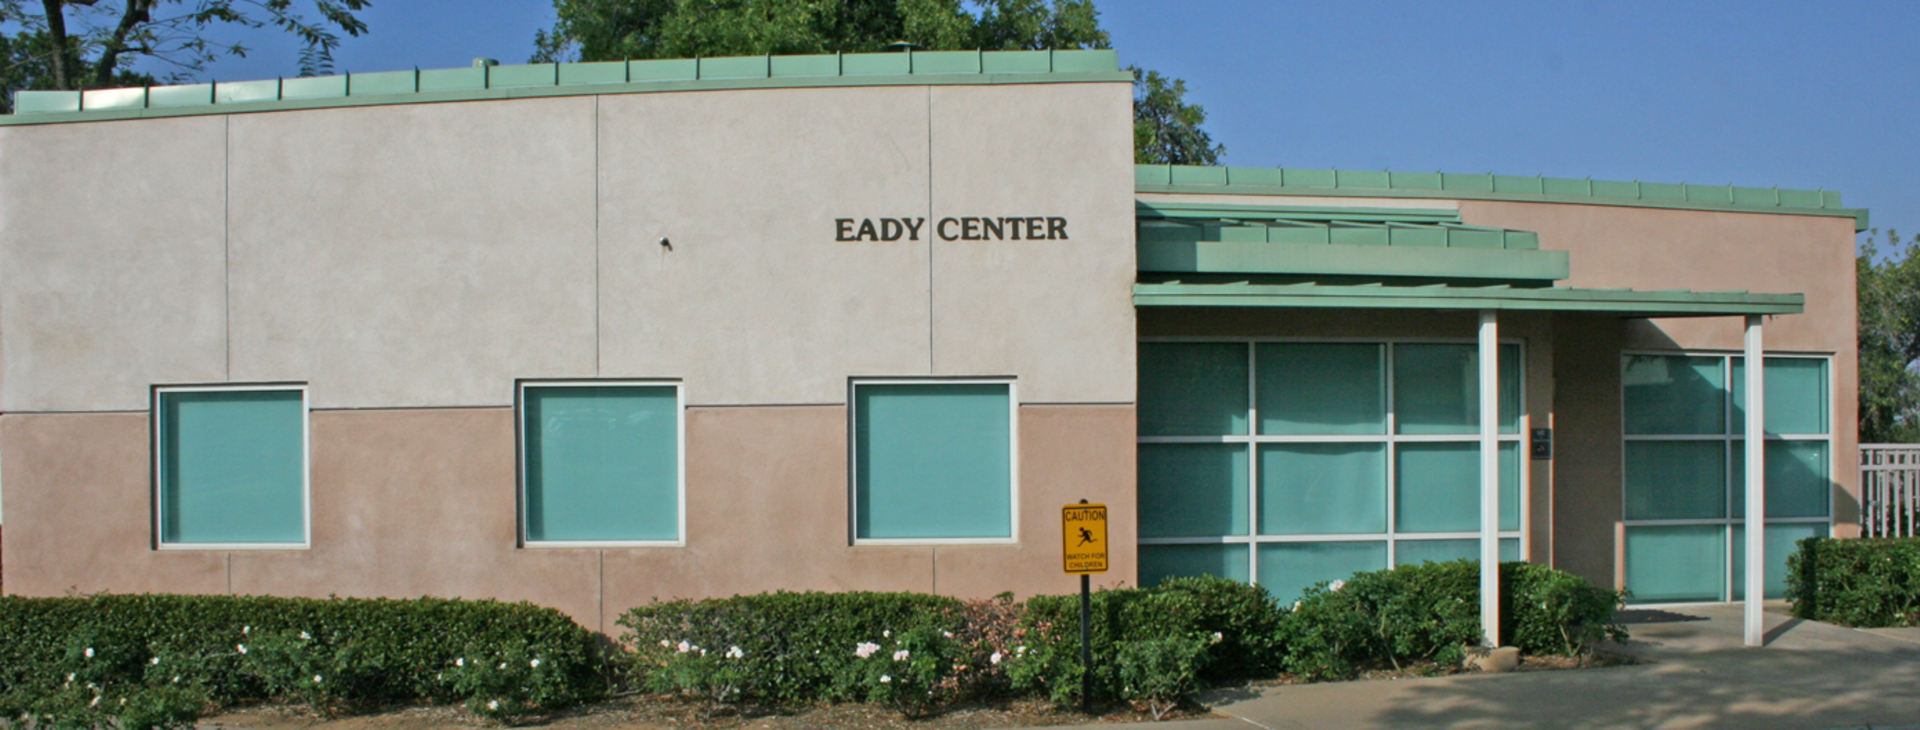 Eady Center